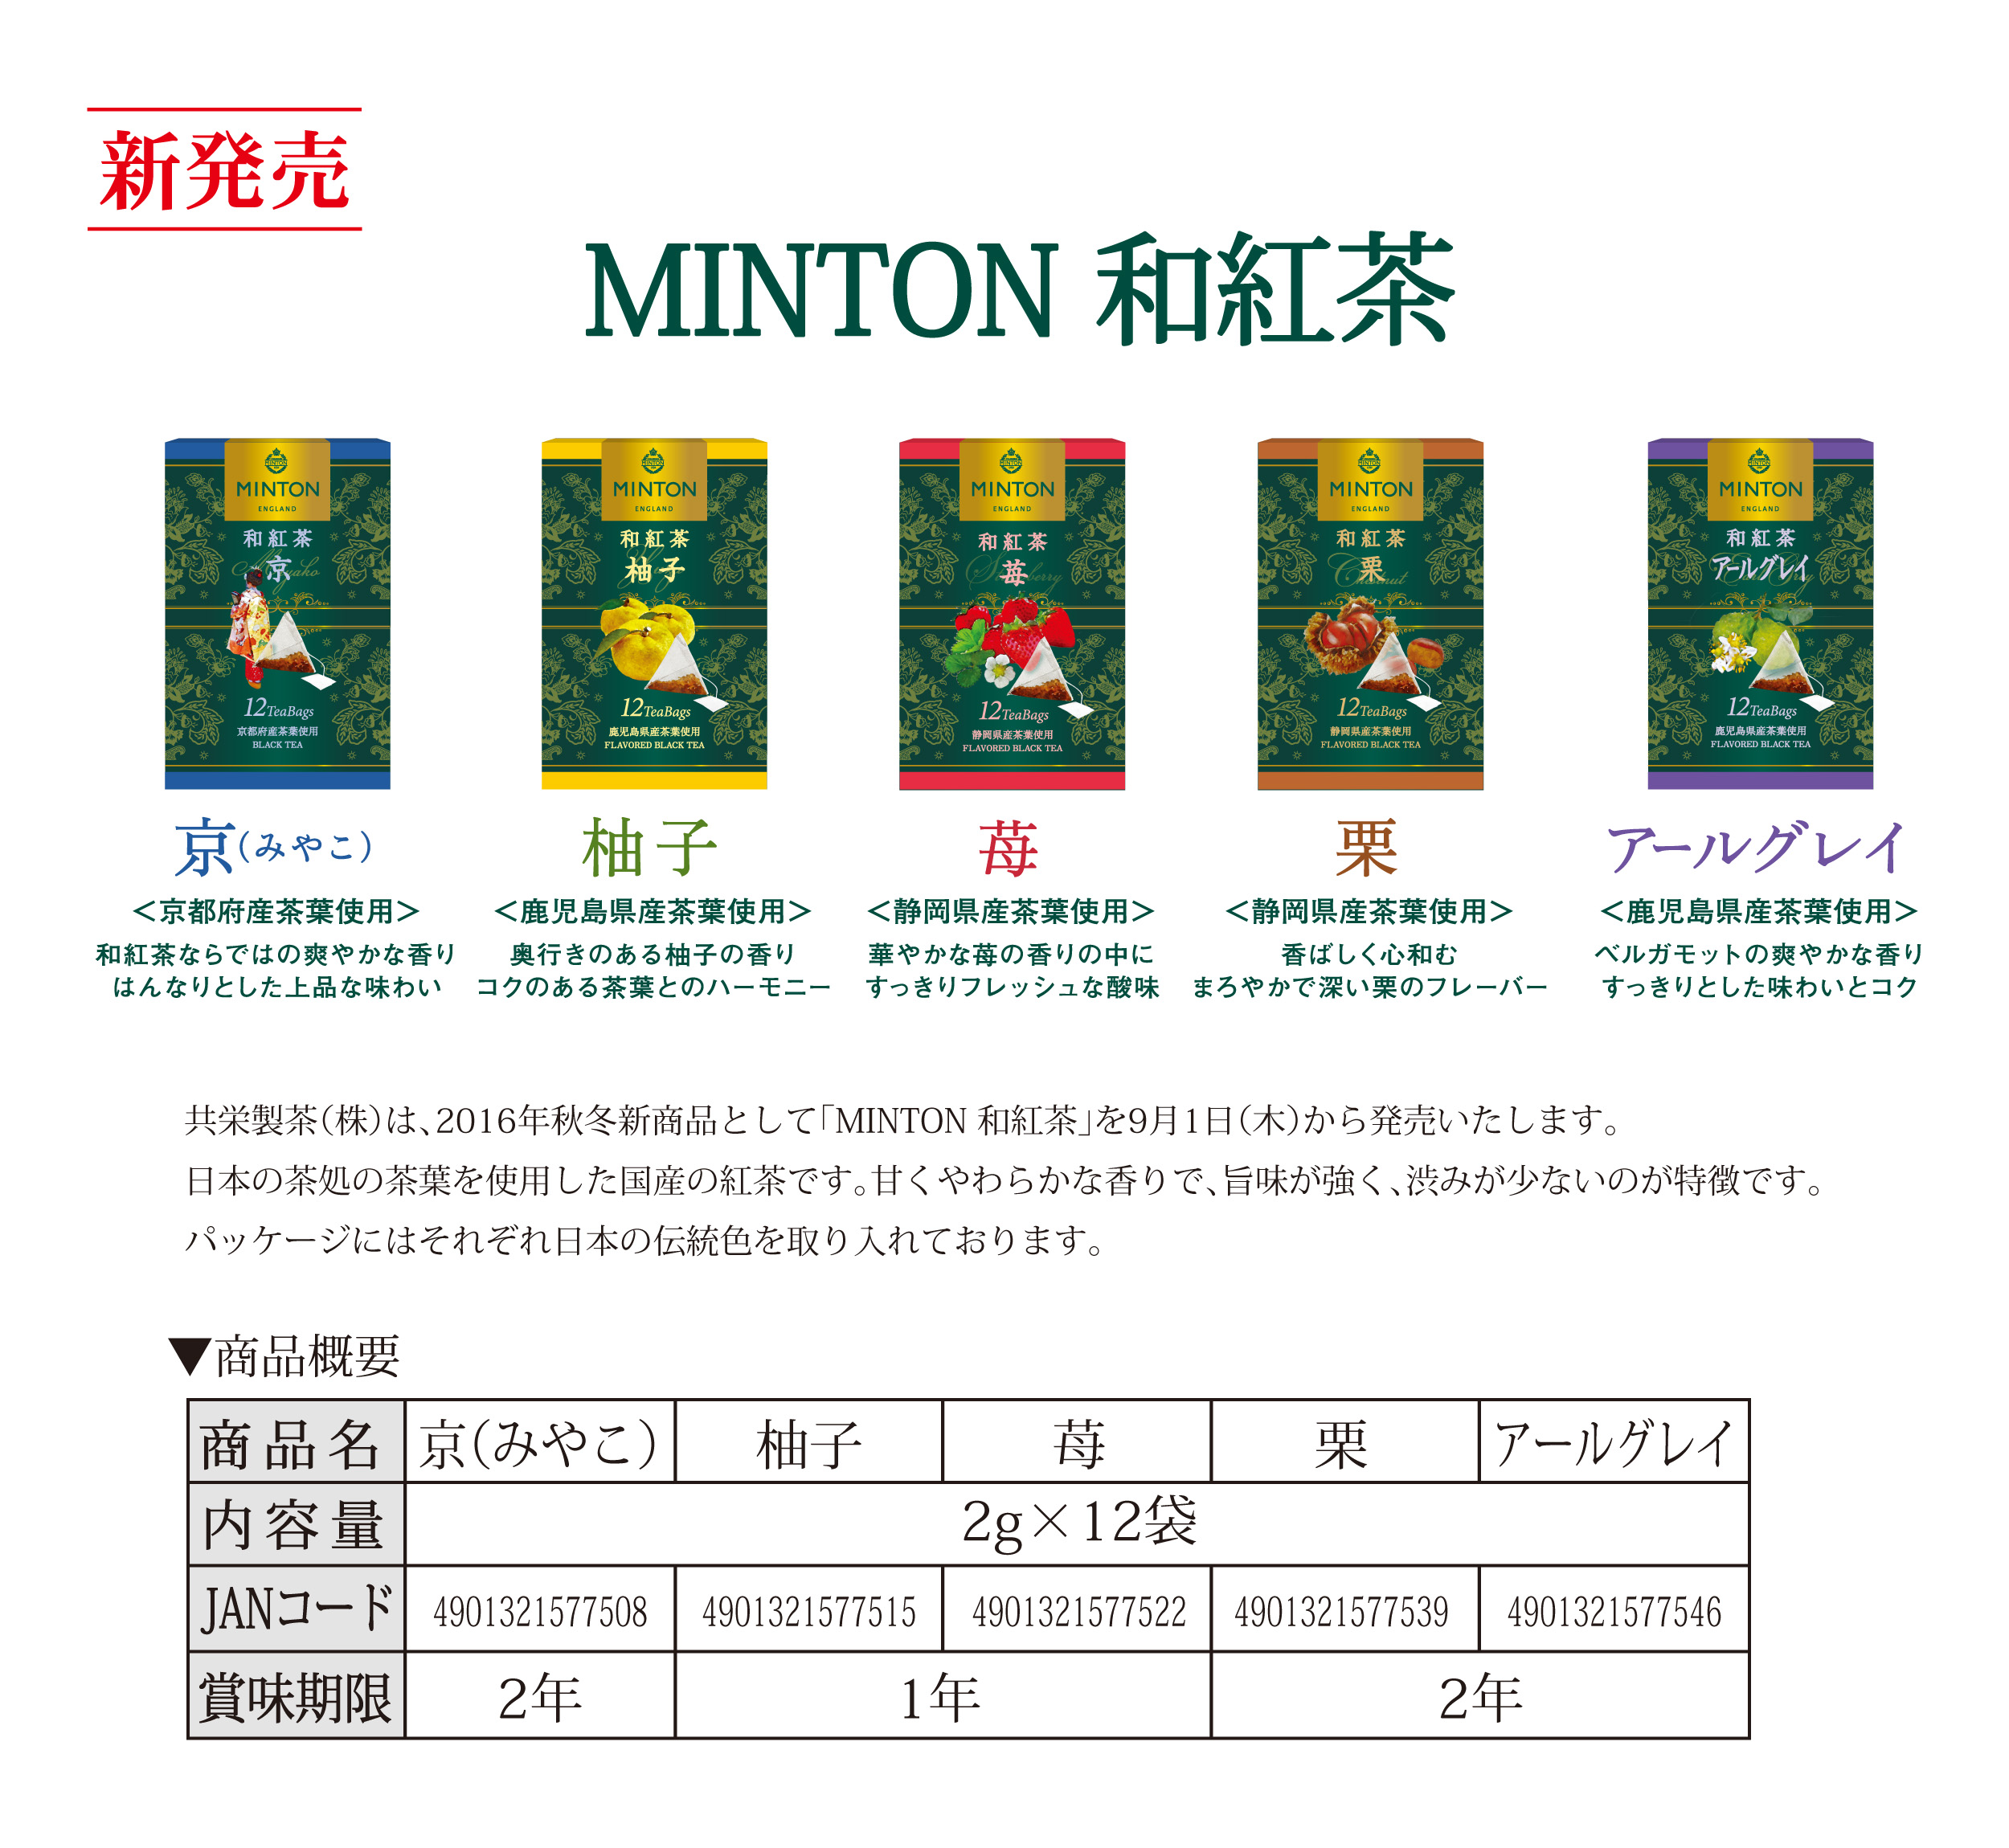 新商品案内【MINTON 和紅茶】